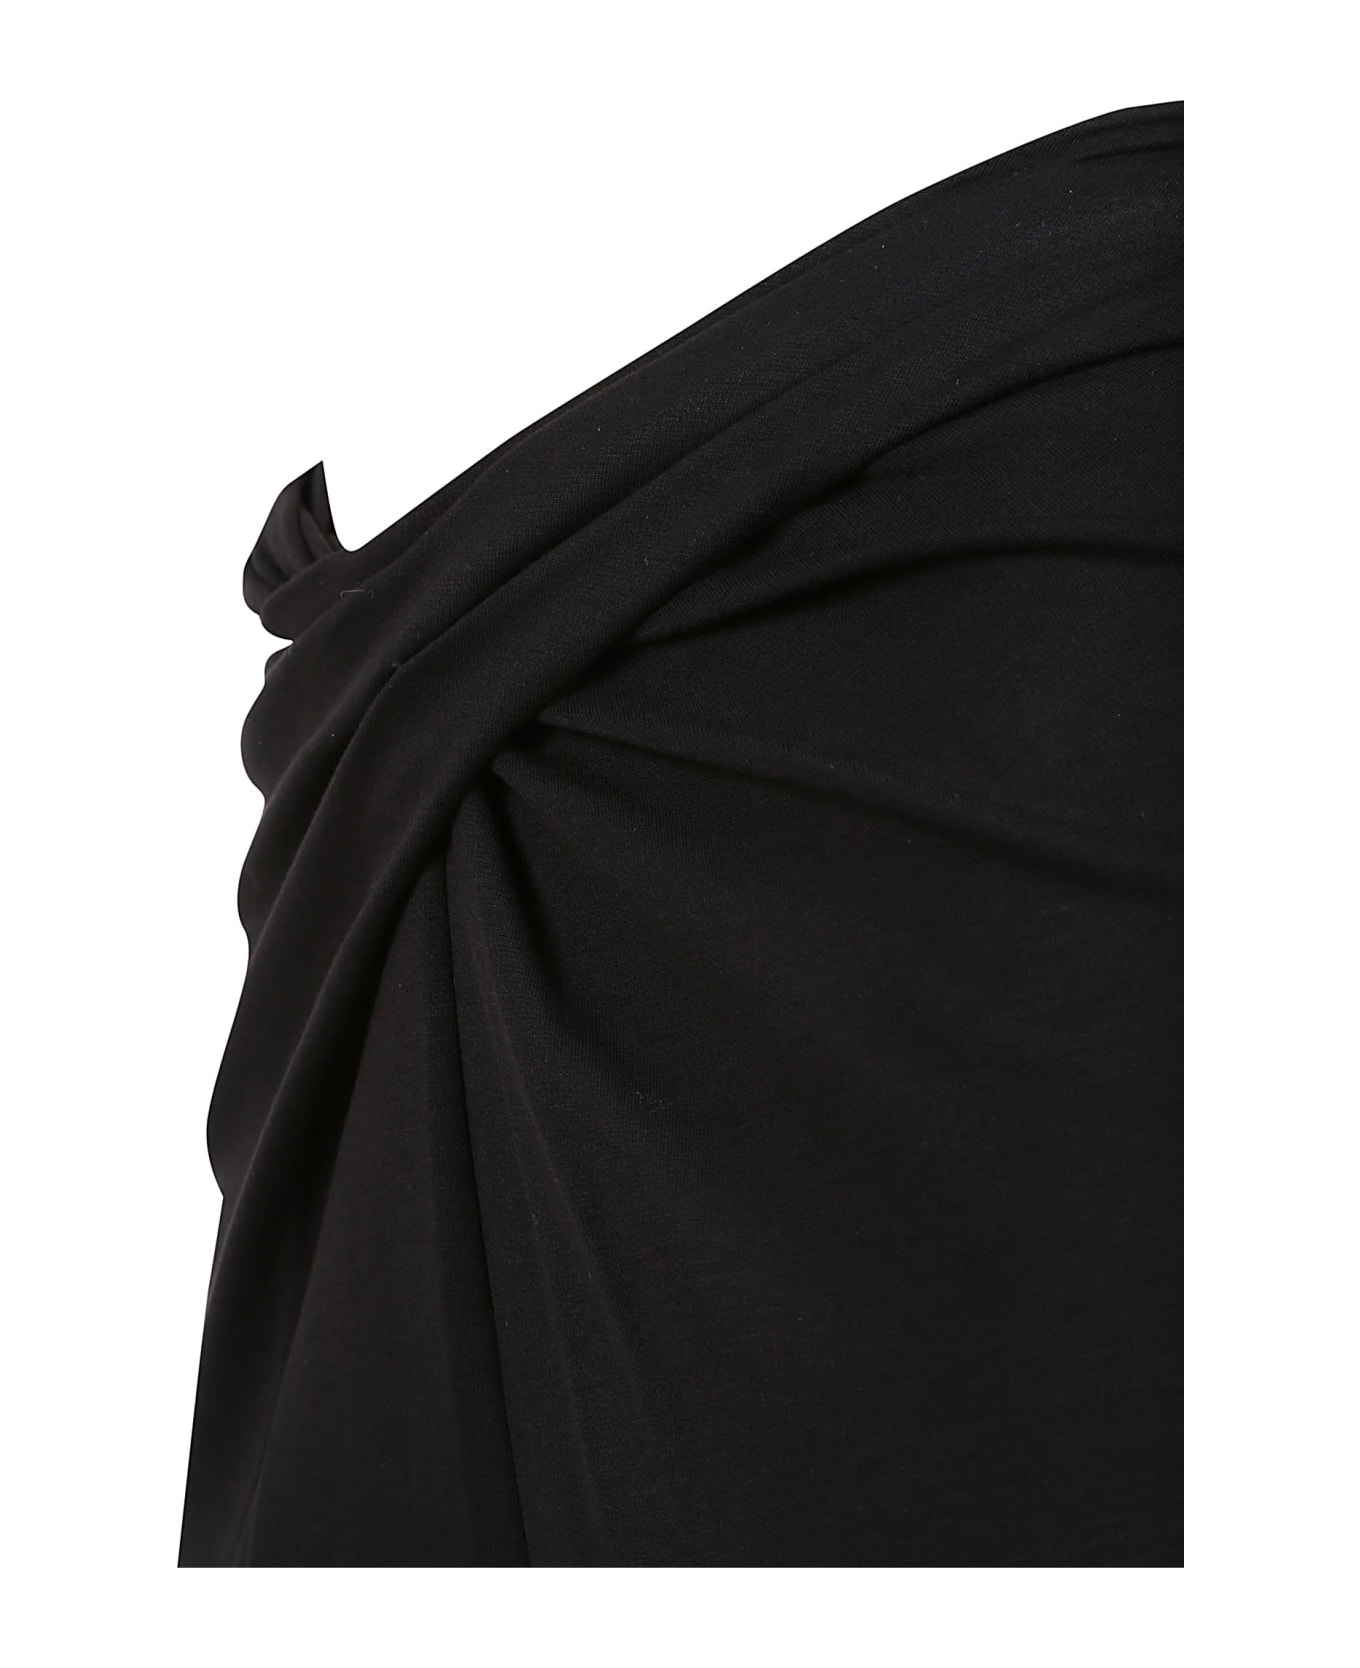 Diane Von Furstenberg Trousers Black - Black